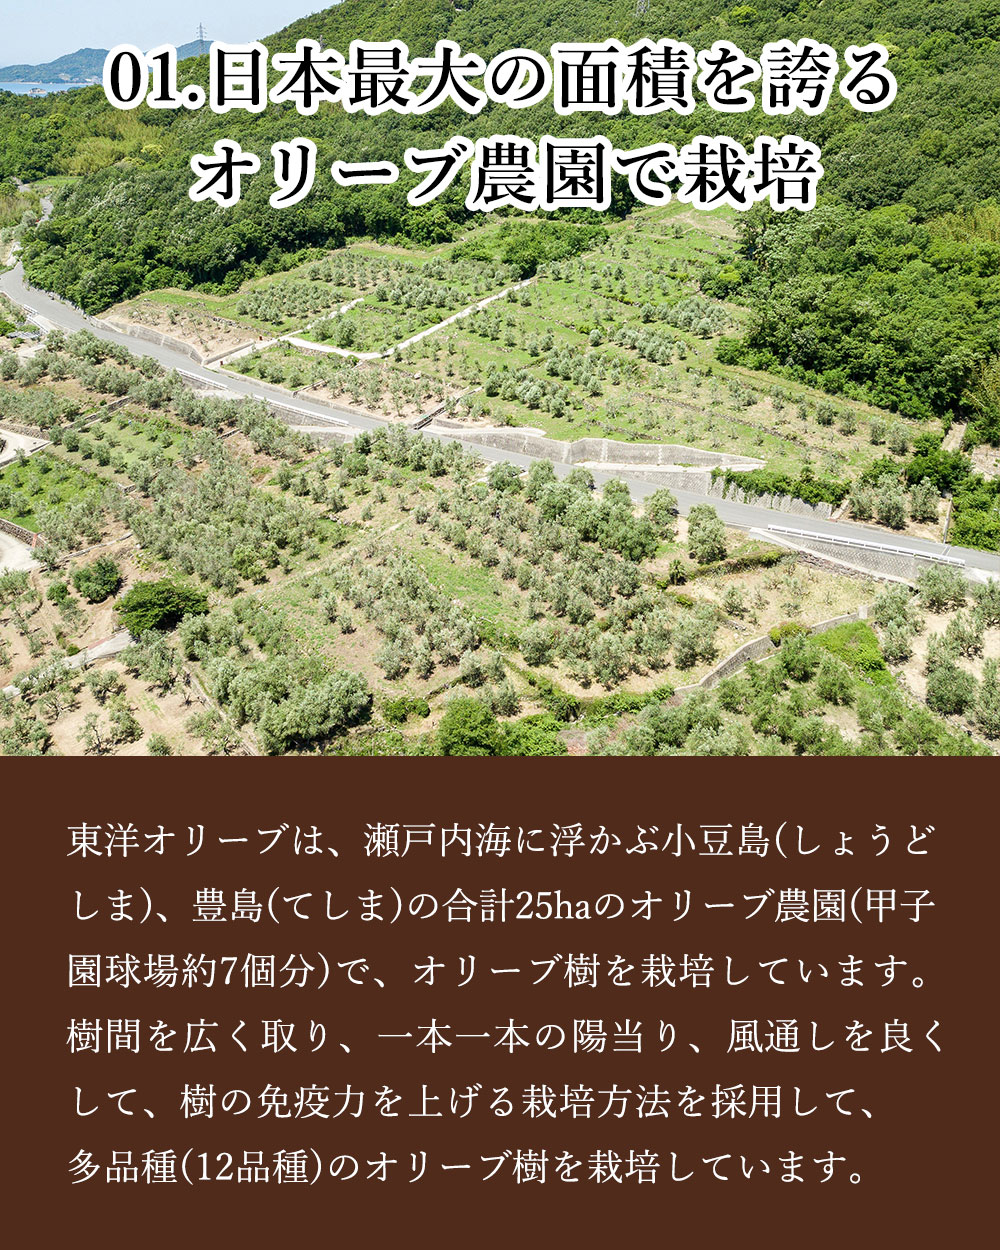 日本最大の面積を誇るオリーブ農園で栽培